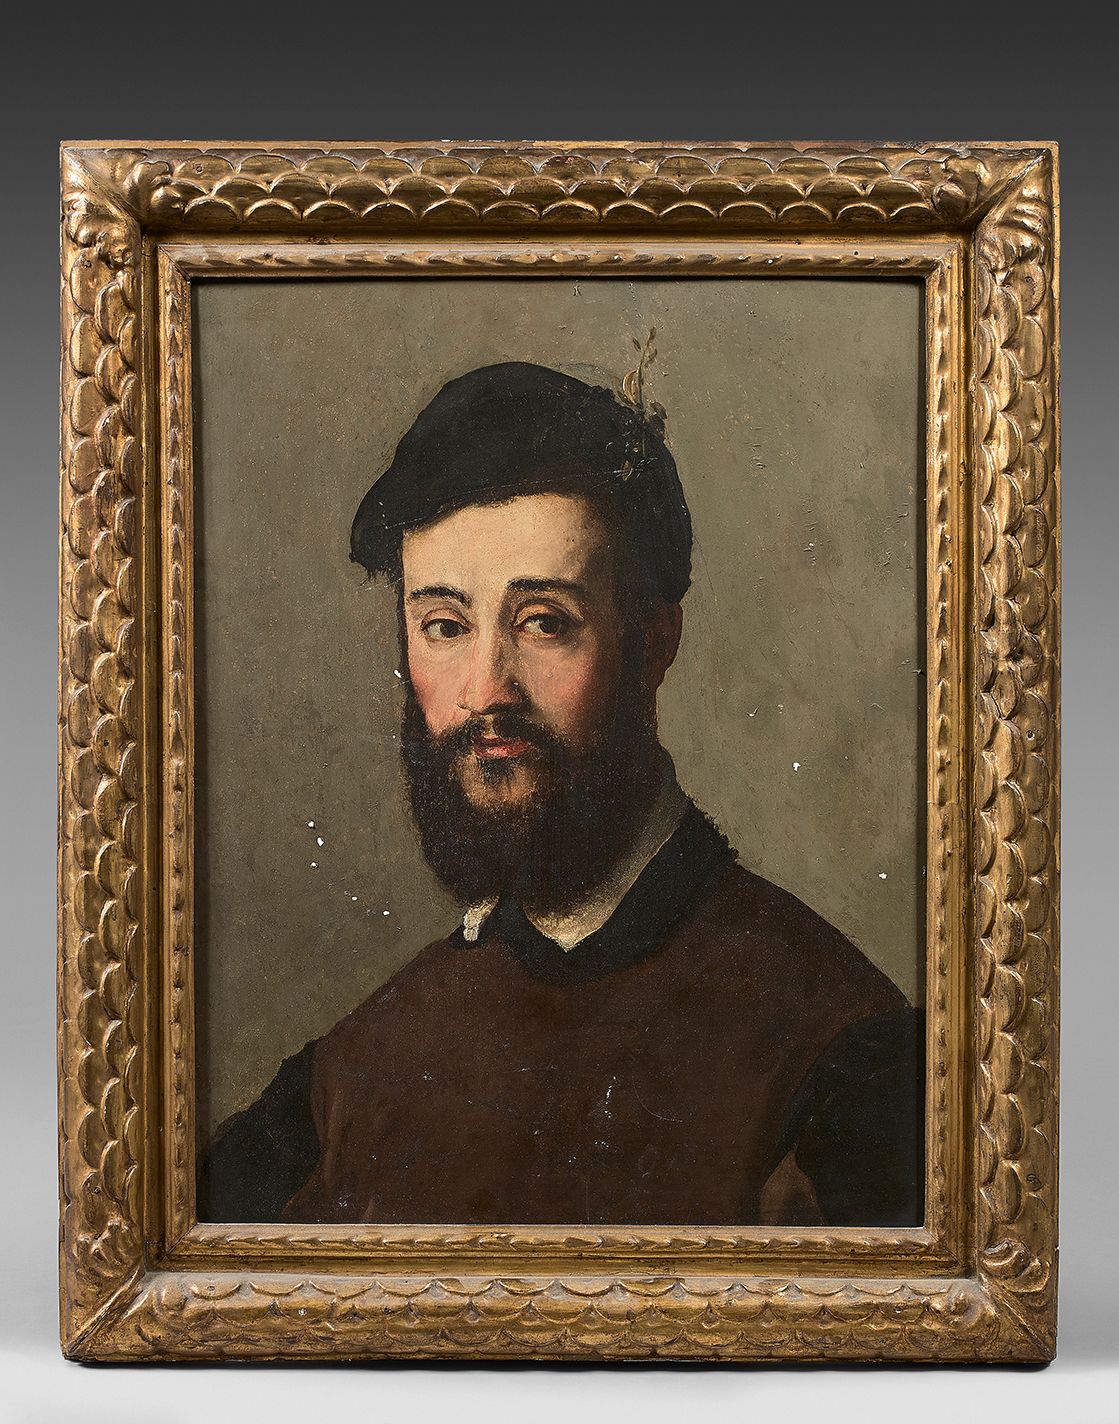 Ecole Italienne du XIXe siècle 胡子男人的肖像
加固的杨木板。
修复。
57.7 x 46 cm